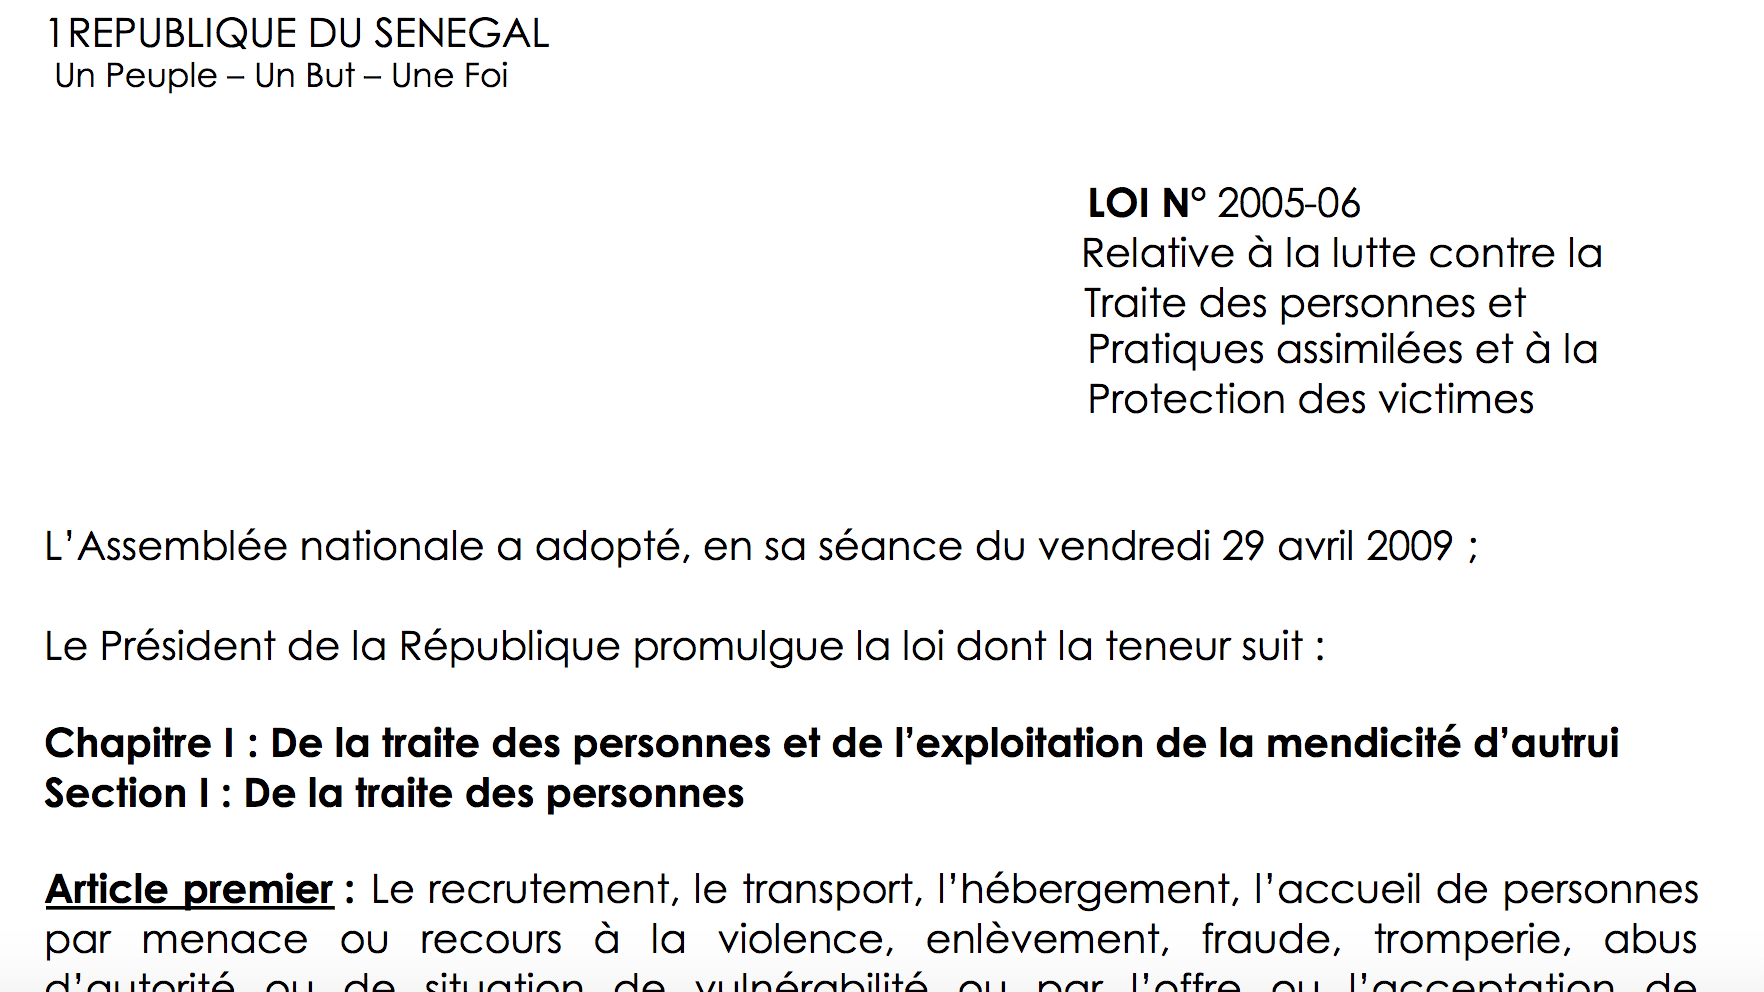 LOI N° 2005 -06 relative à la lutte contre la traite des personnes et pratiques assimilées et à la protection des victimes (Senegal)